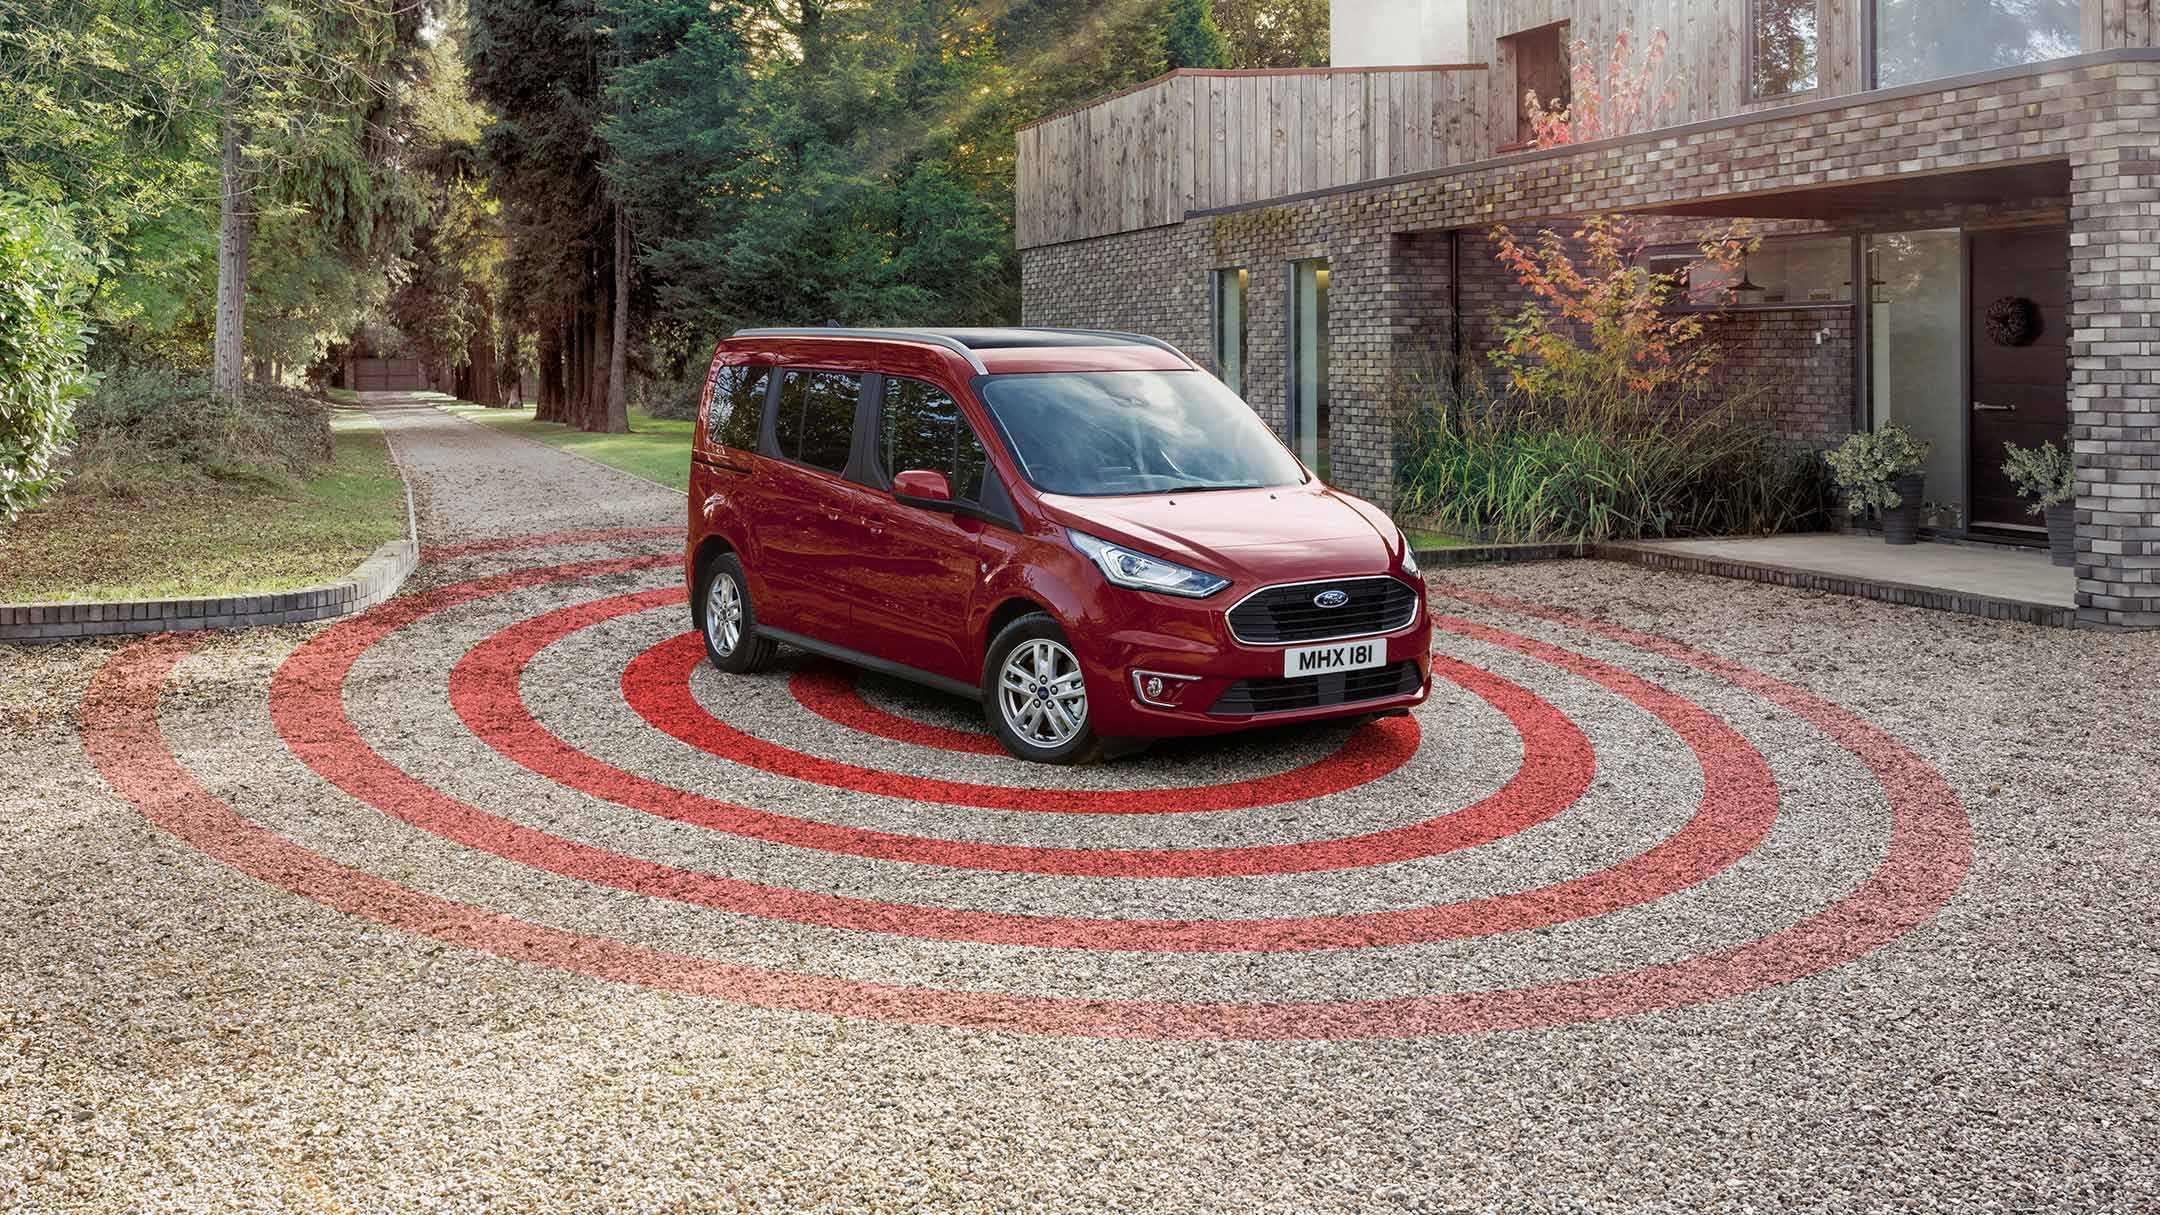 Ford Tourneo Connect in Rot. Dreiviertelansicht, parkt auf Kiesweg vor Wohnhaus mit Diebstahl-Alarmanlage Illustration